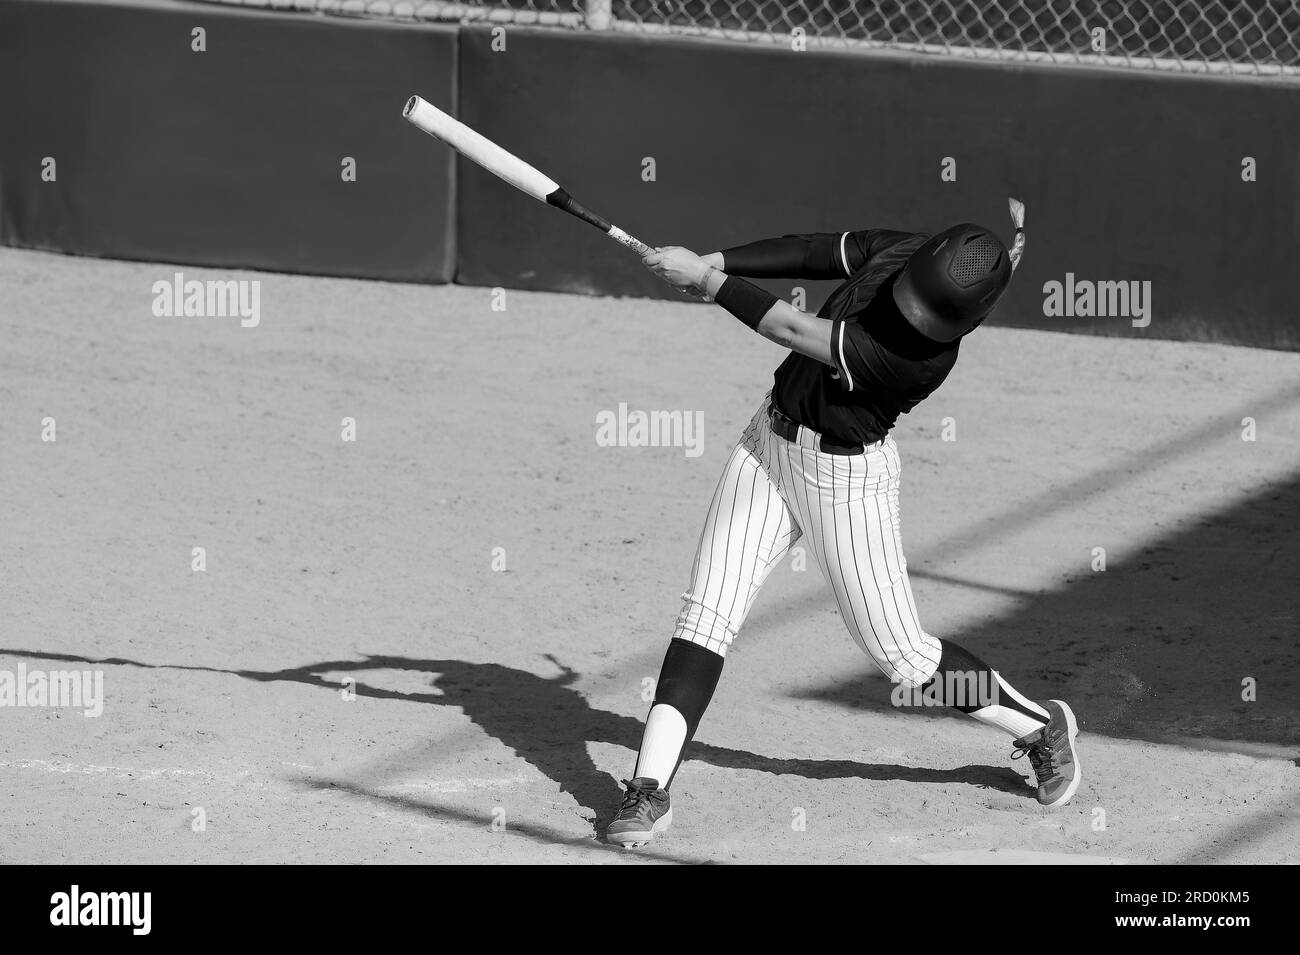 Ein Baseball-Softball-Spieler schlägt den Schläger in Schwarz und Weiß Stockfoto